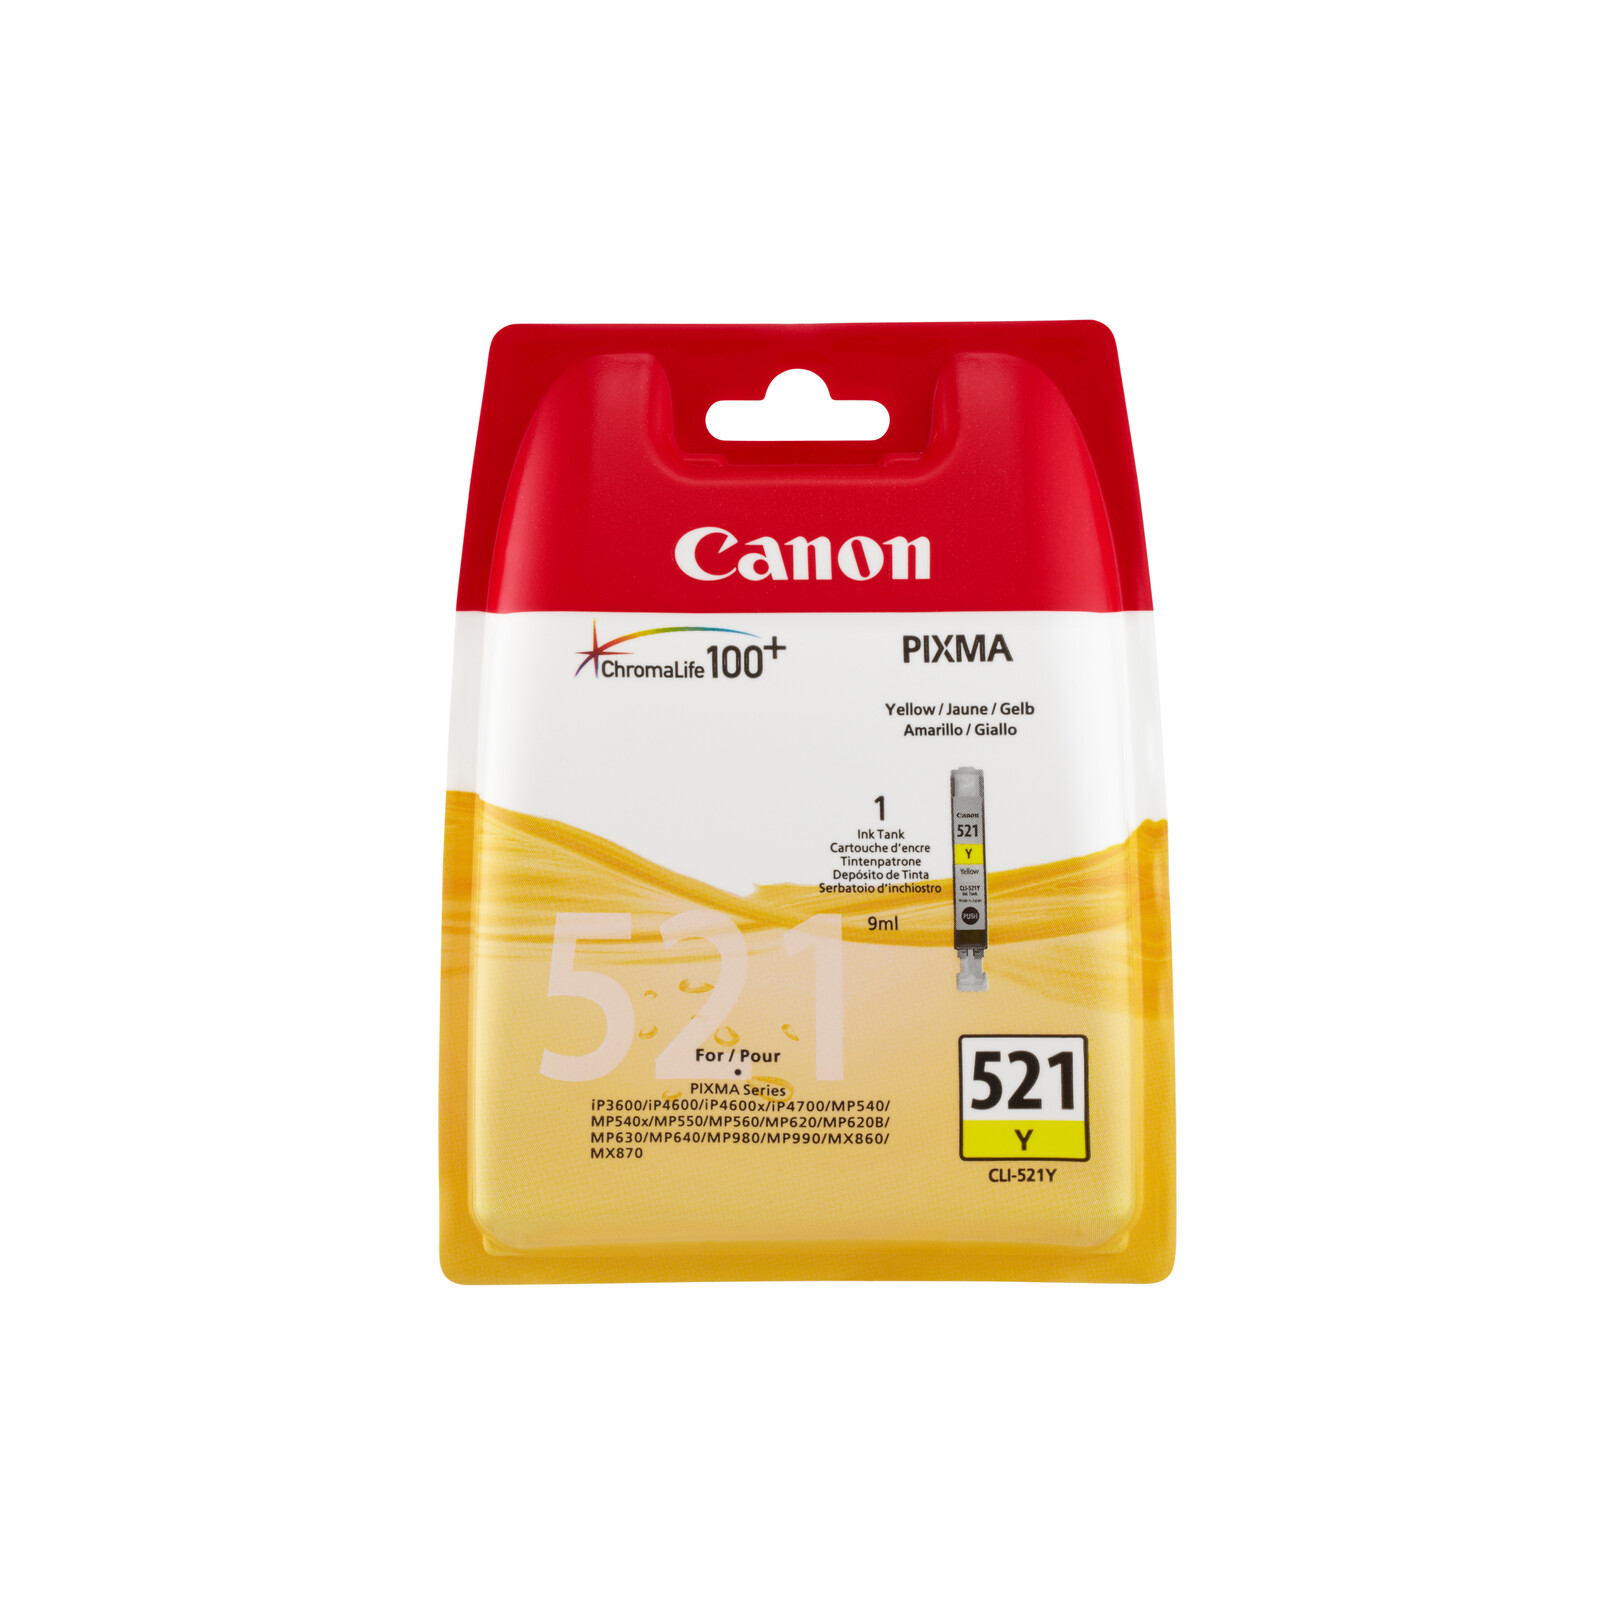 Canon CLI-521 Tinte yellow 9ml